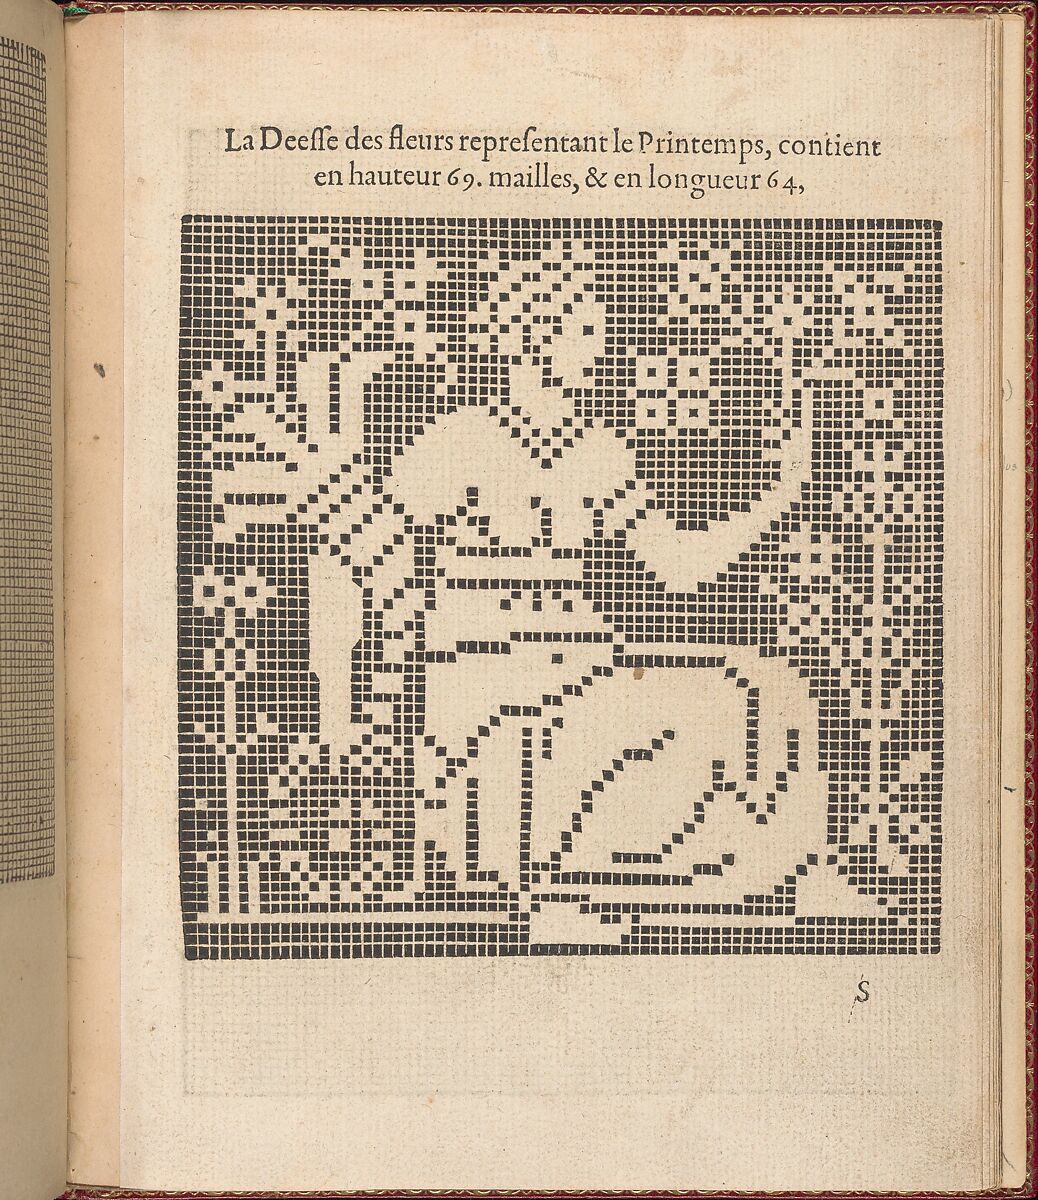 Les Singuliers et Nouveaux Portraicts... page 69 (recto), Federico de Vinciolo (Italian, active Paris, ca. 1587–99), Woodcut 